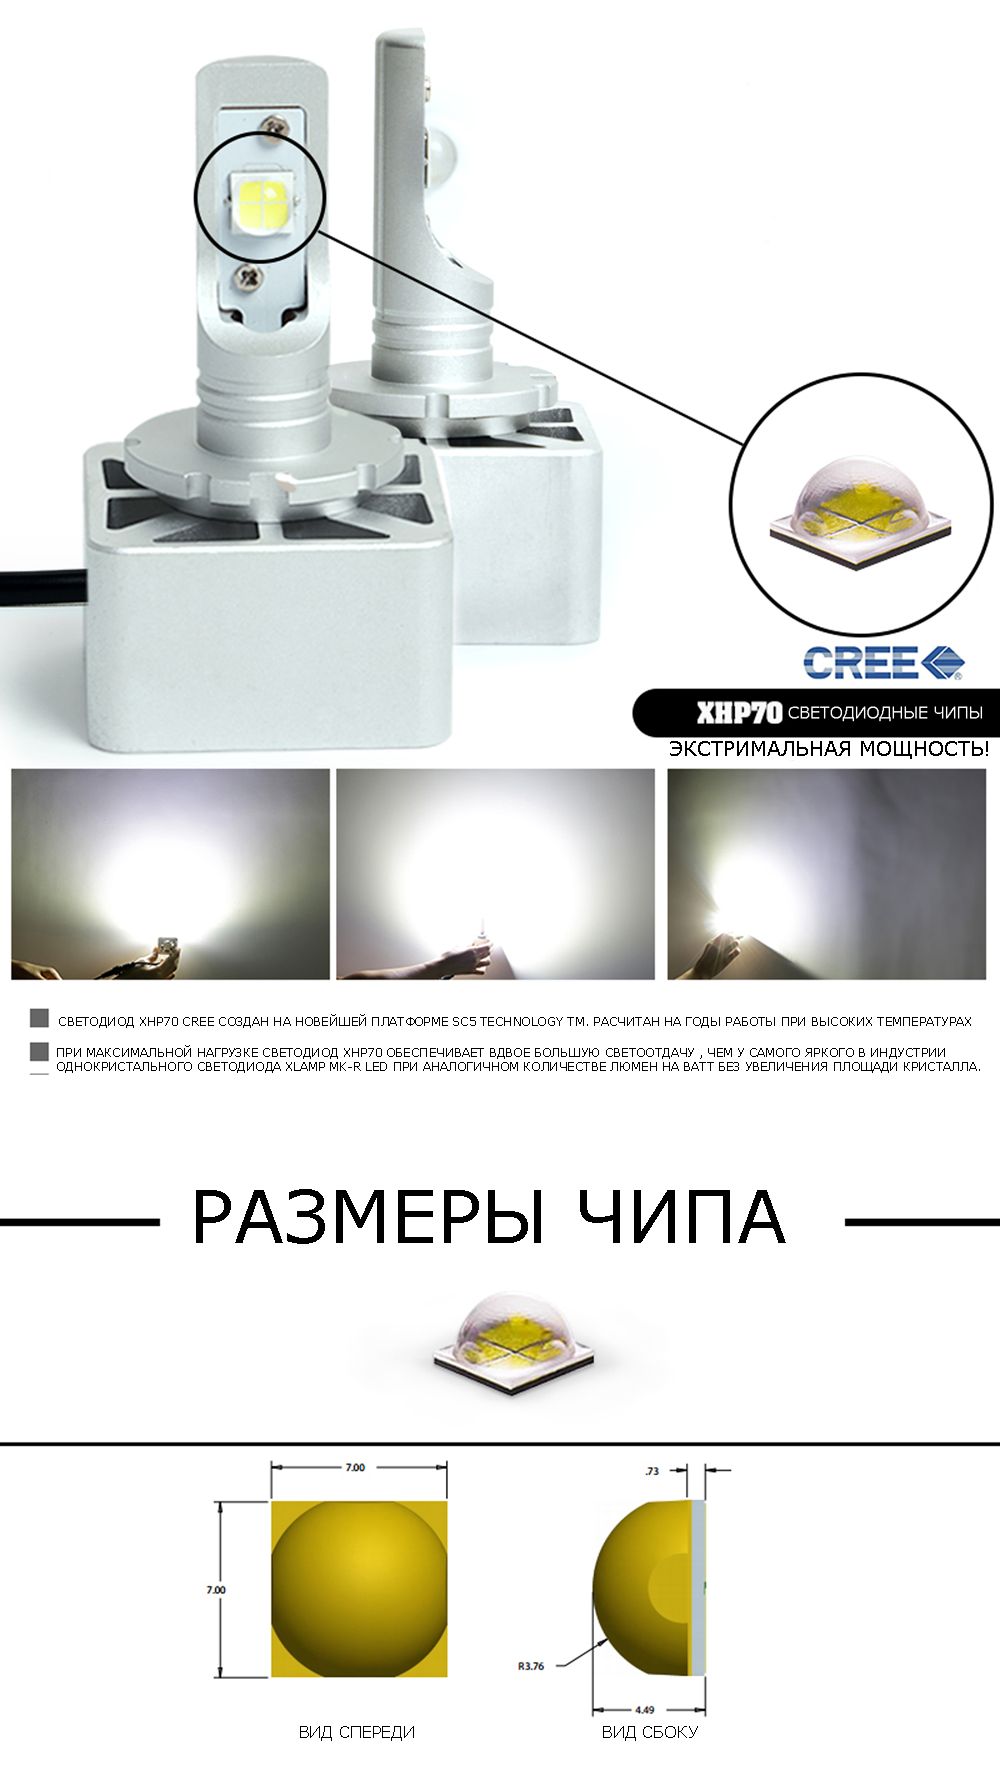 Светодиодные лампы Vizant 8S для линз цоколь HB3 9005 с чипом  CREE-XHP70 6000lm 5000k   (цена за 2 лампы)